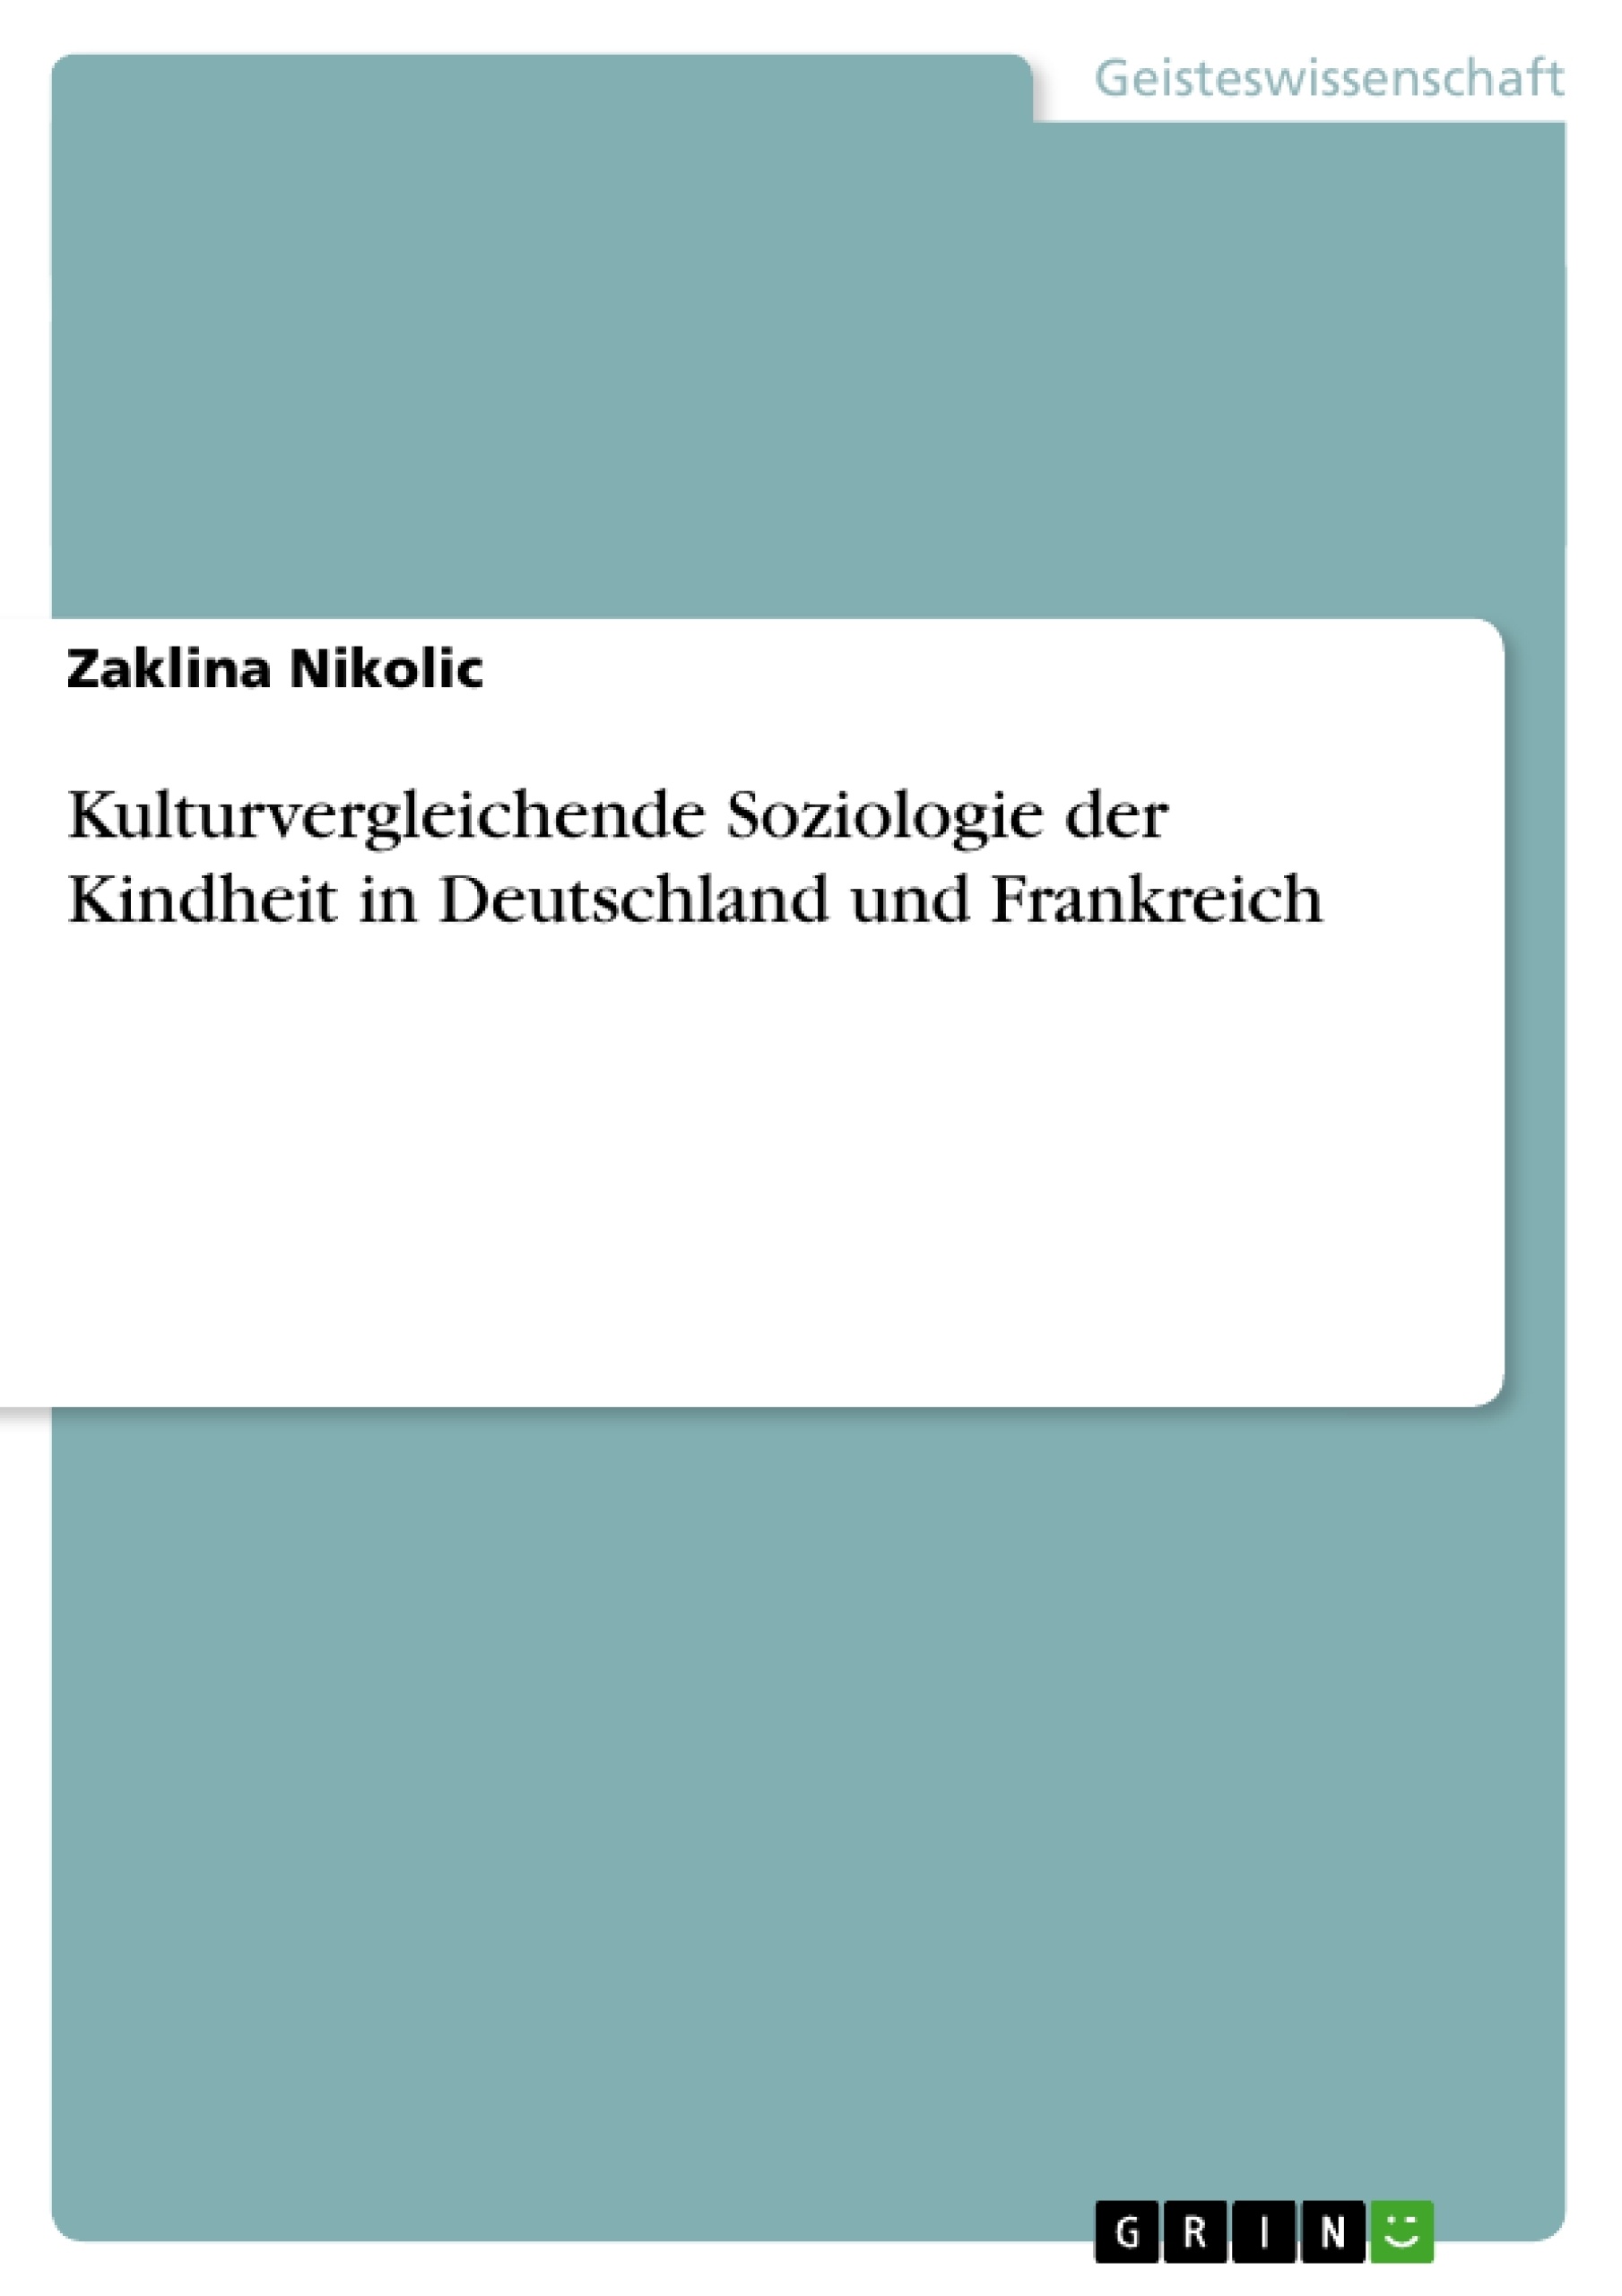 Título: Kulturvergleichende Soziologie der Kindheit in Deutschland und Frankreich